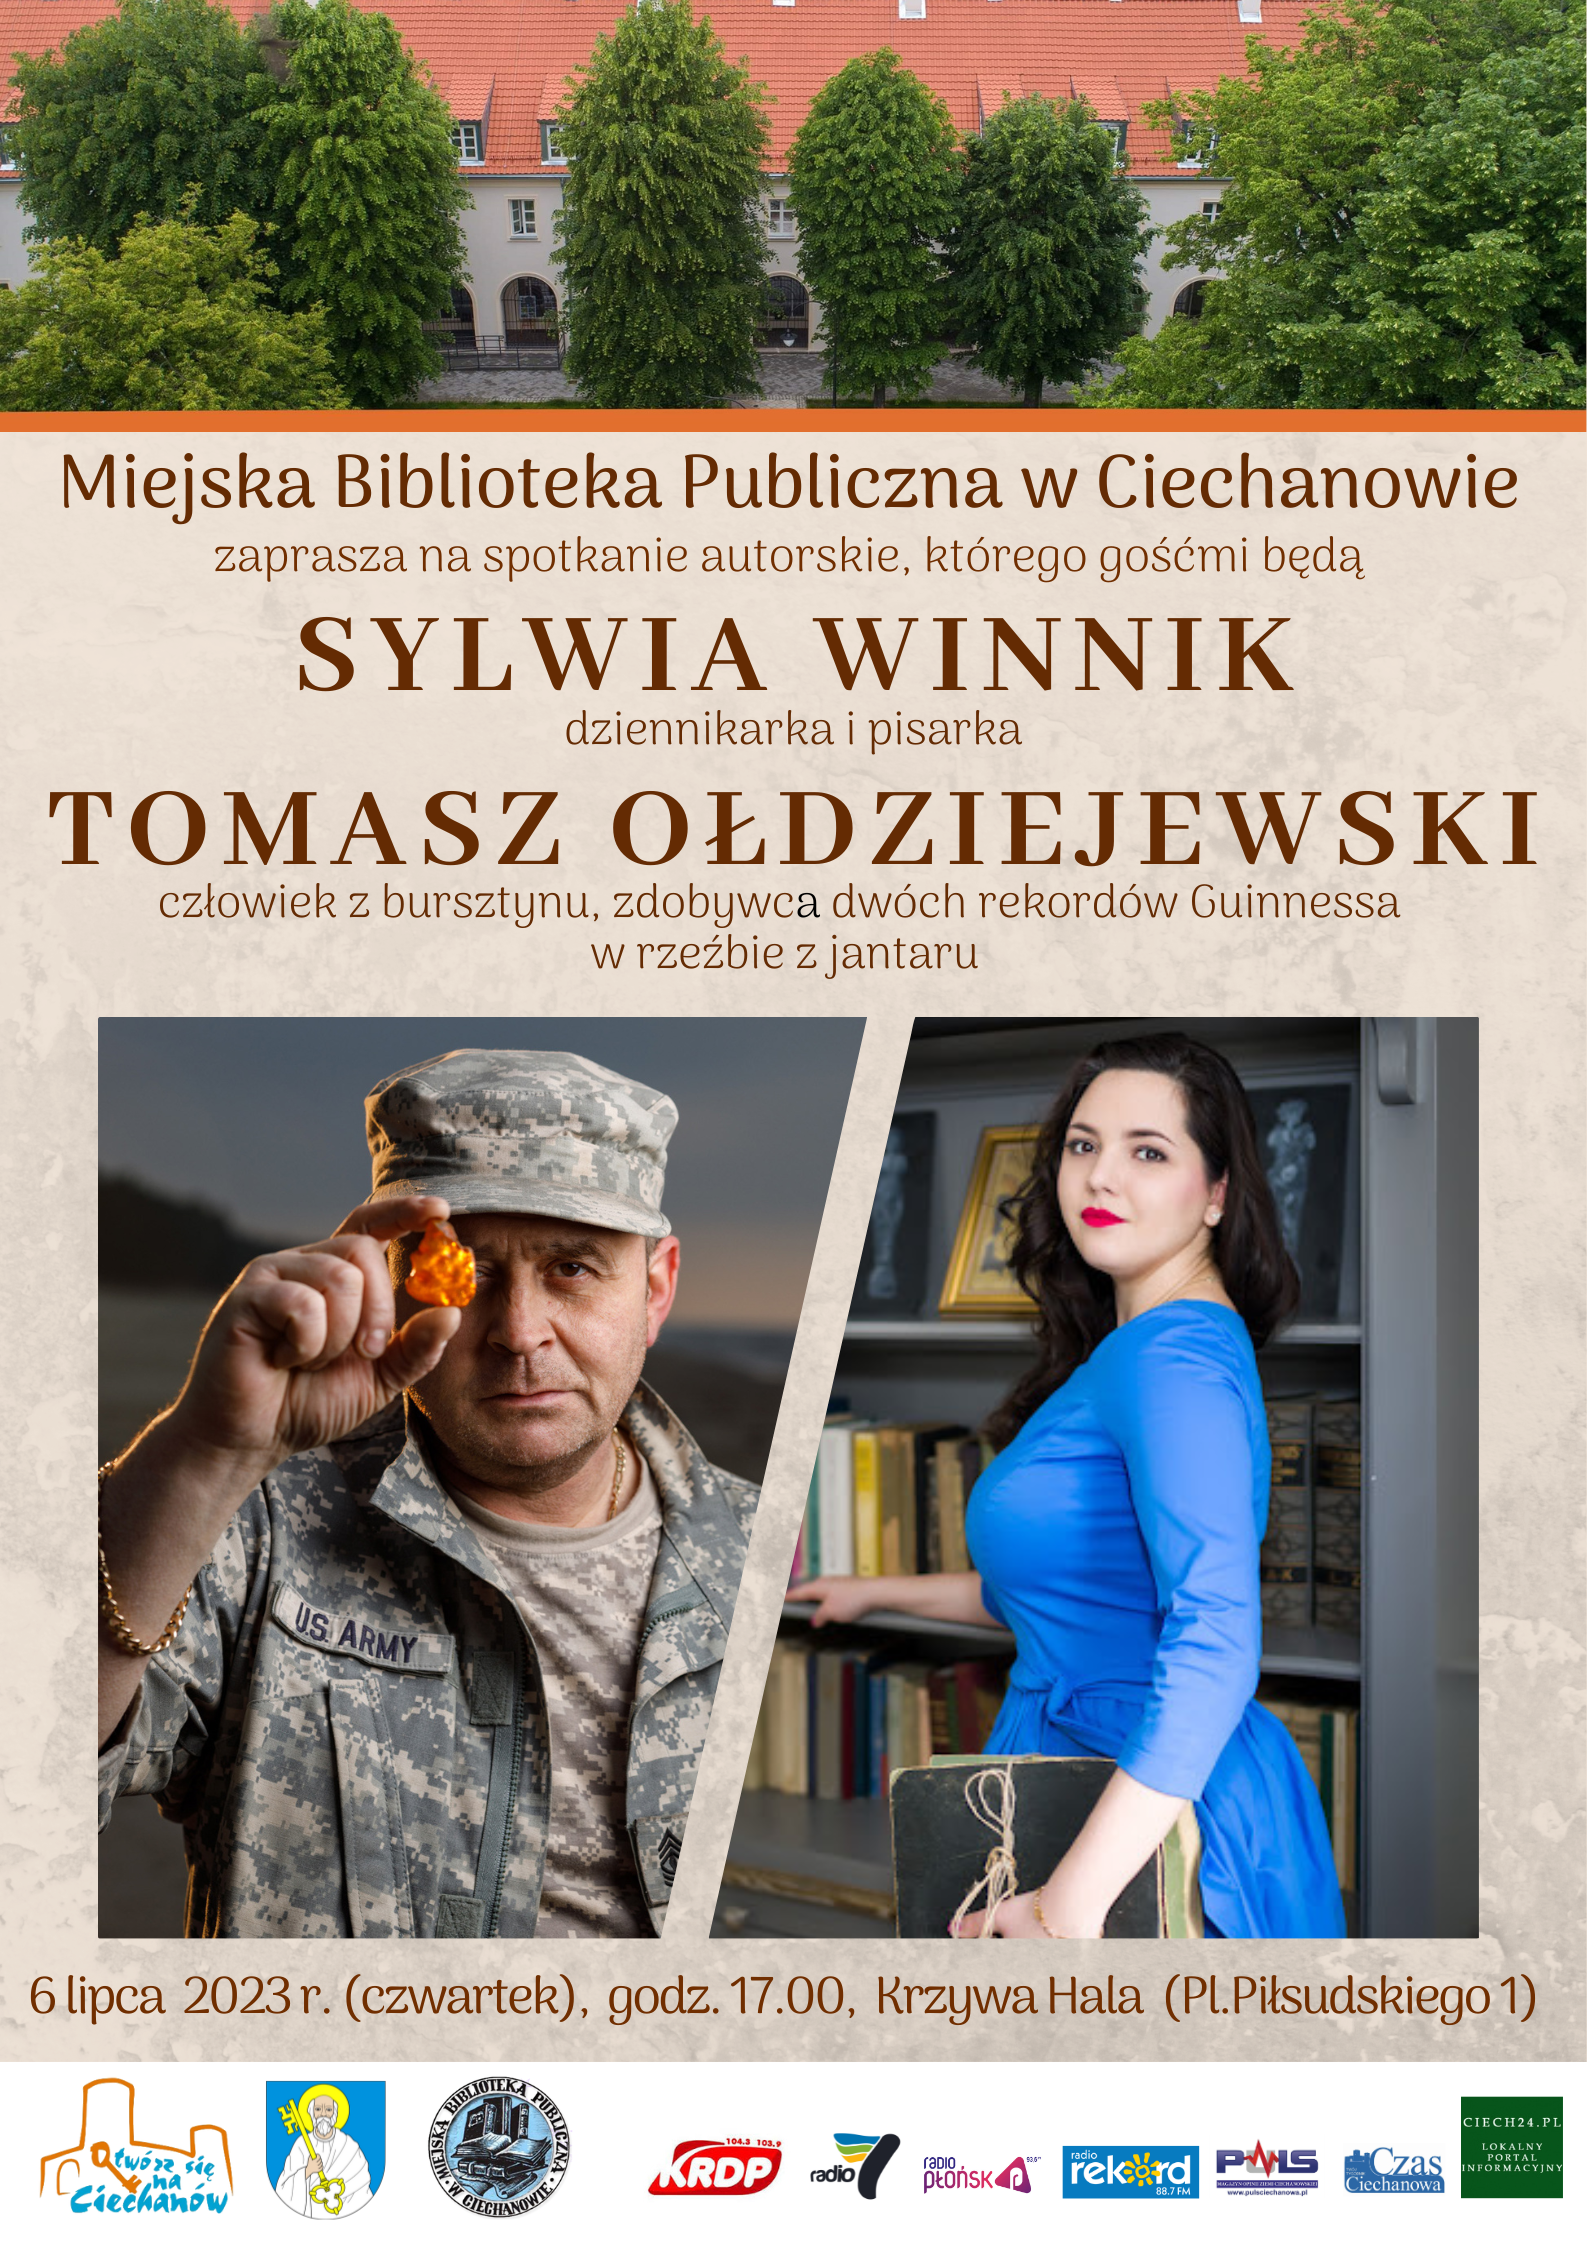 Spotkanie Sylwia Winnik i Tomasz Oldziejewski 6.07.2023